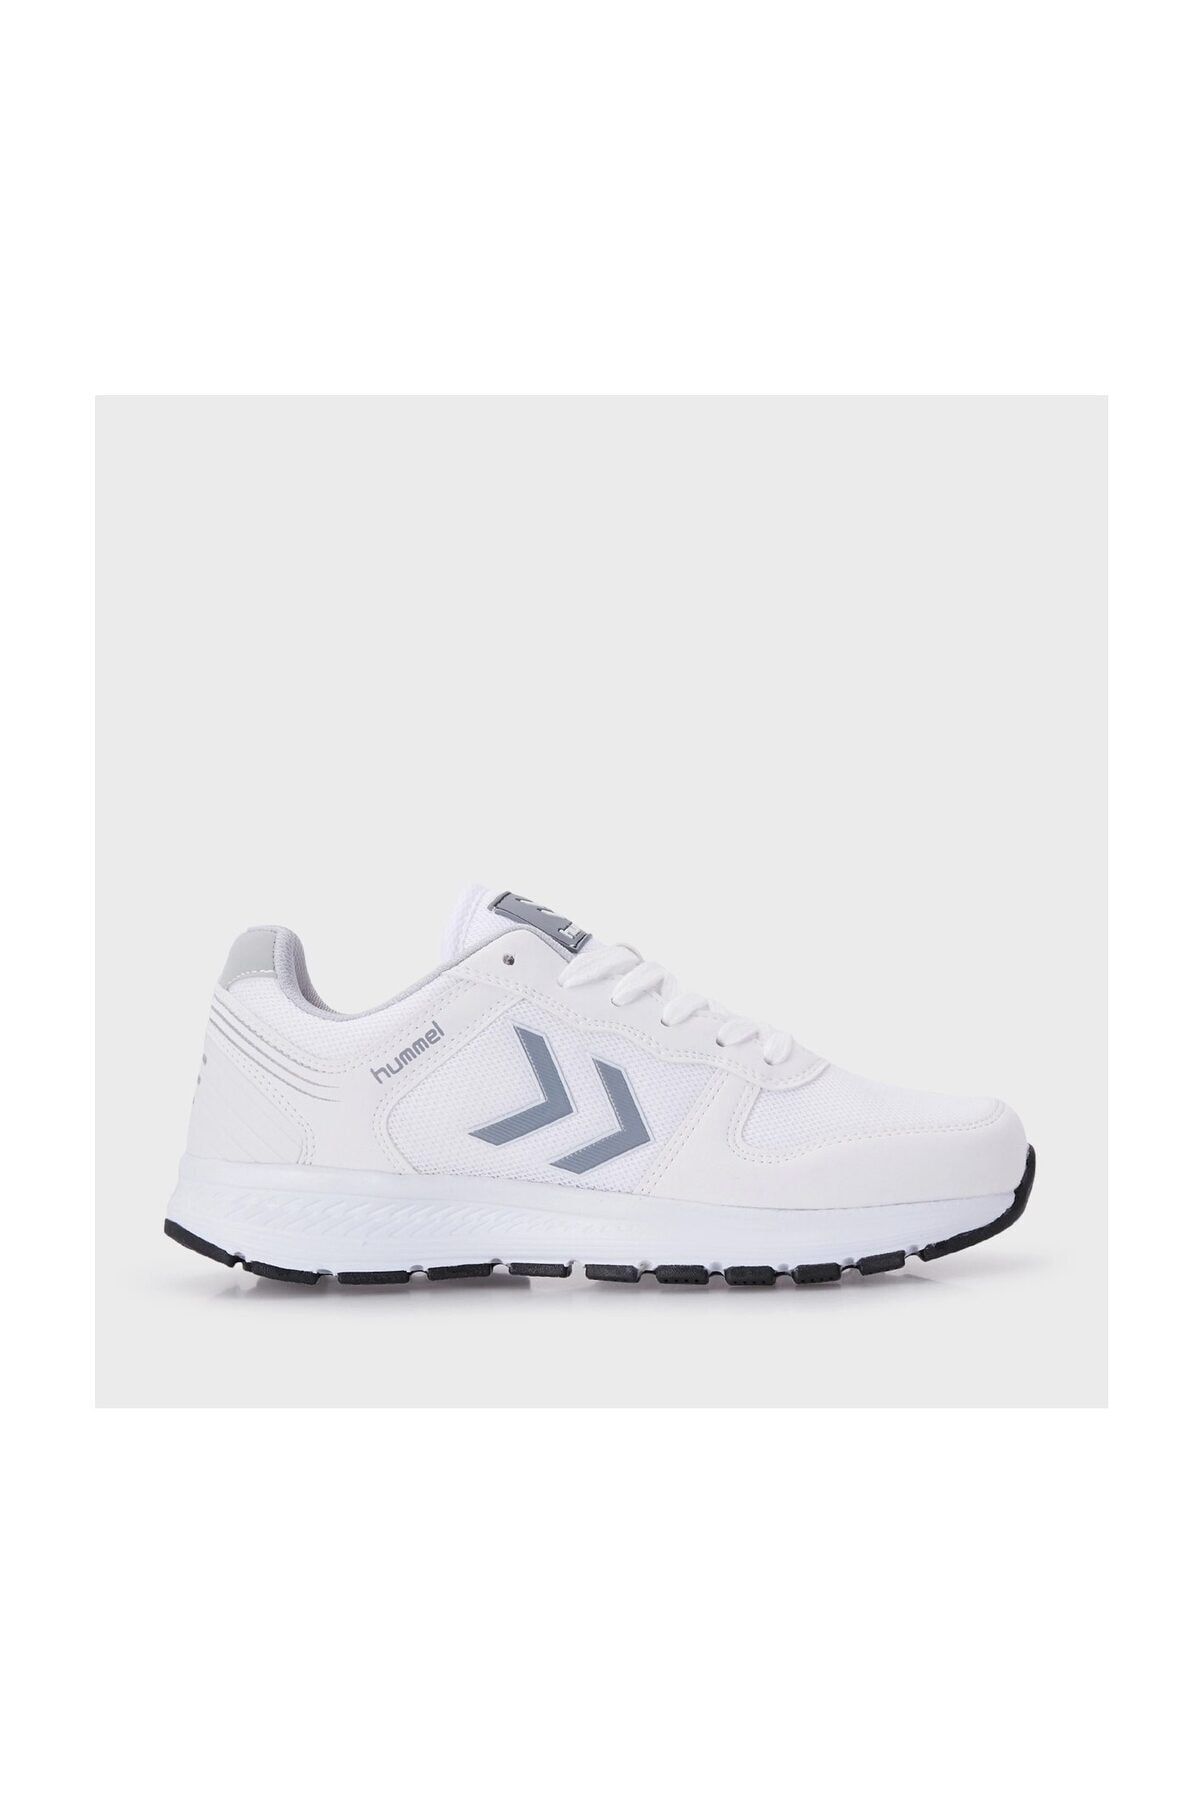 کفش ورزشی دویدن مردانه پارچه قابل تنفس سفید خاکستری هومل Hummel (برند دانمارک)